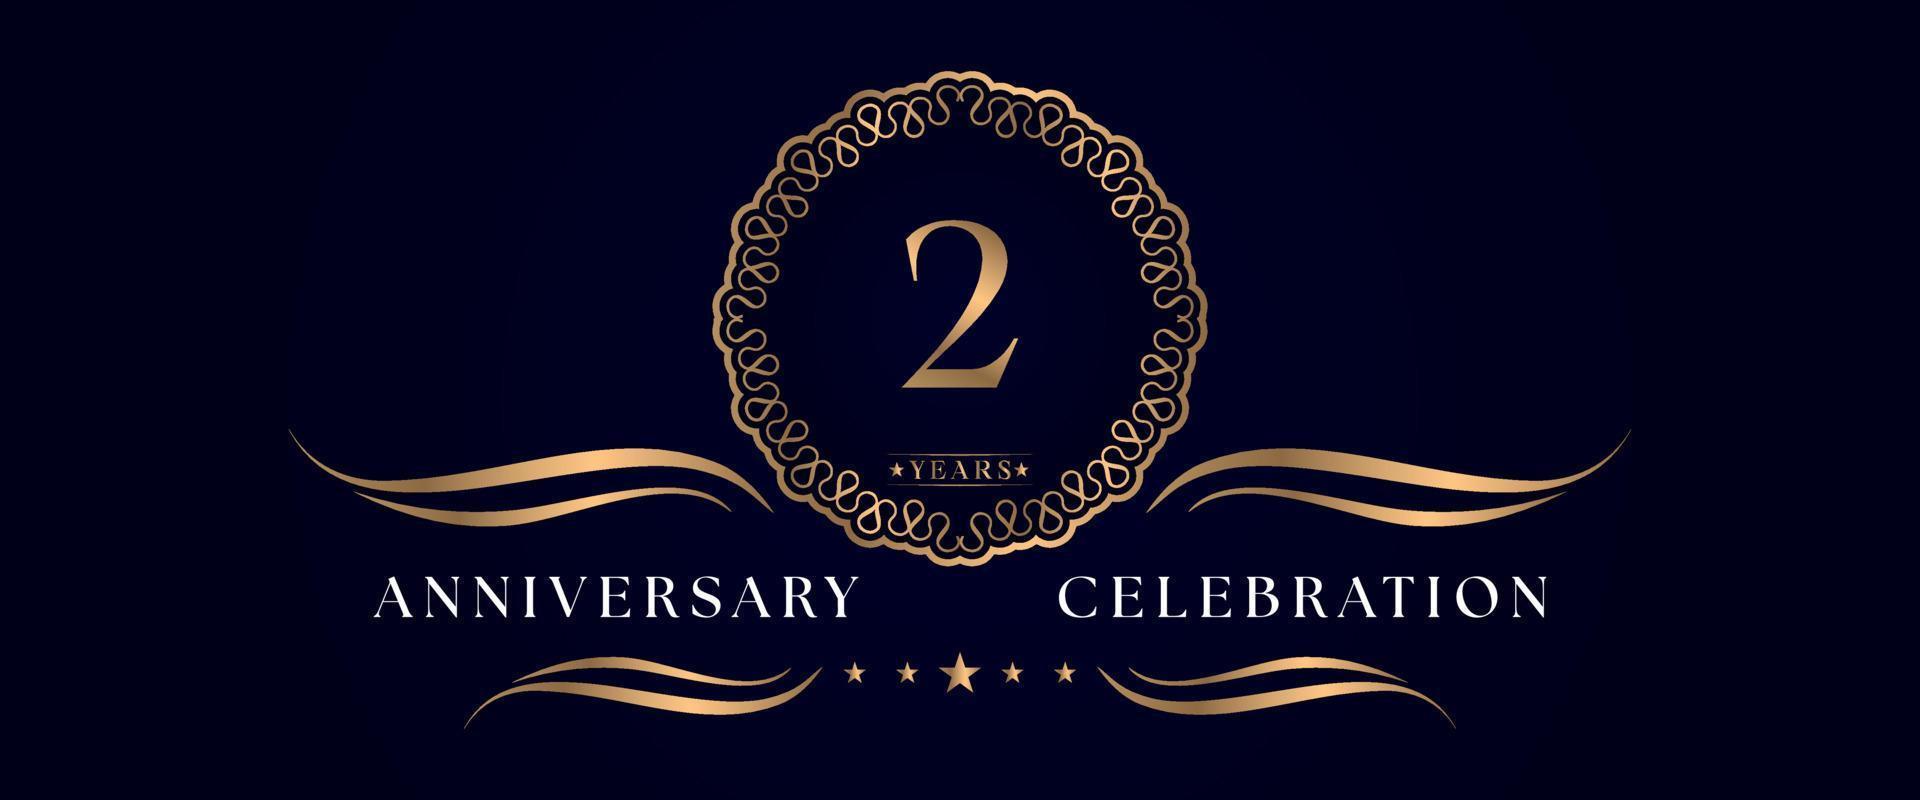 Celebrazione dell'anniversario di 2 anni con elegante cornice circolare isolata su sfondo blu scuro. disegno vettoriale per biglietto di auguri, festa di compleanno, matrimonio, festa evento, cerimonia. Logo dell'anniversario di 2 anni.